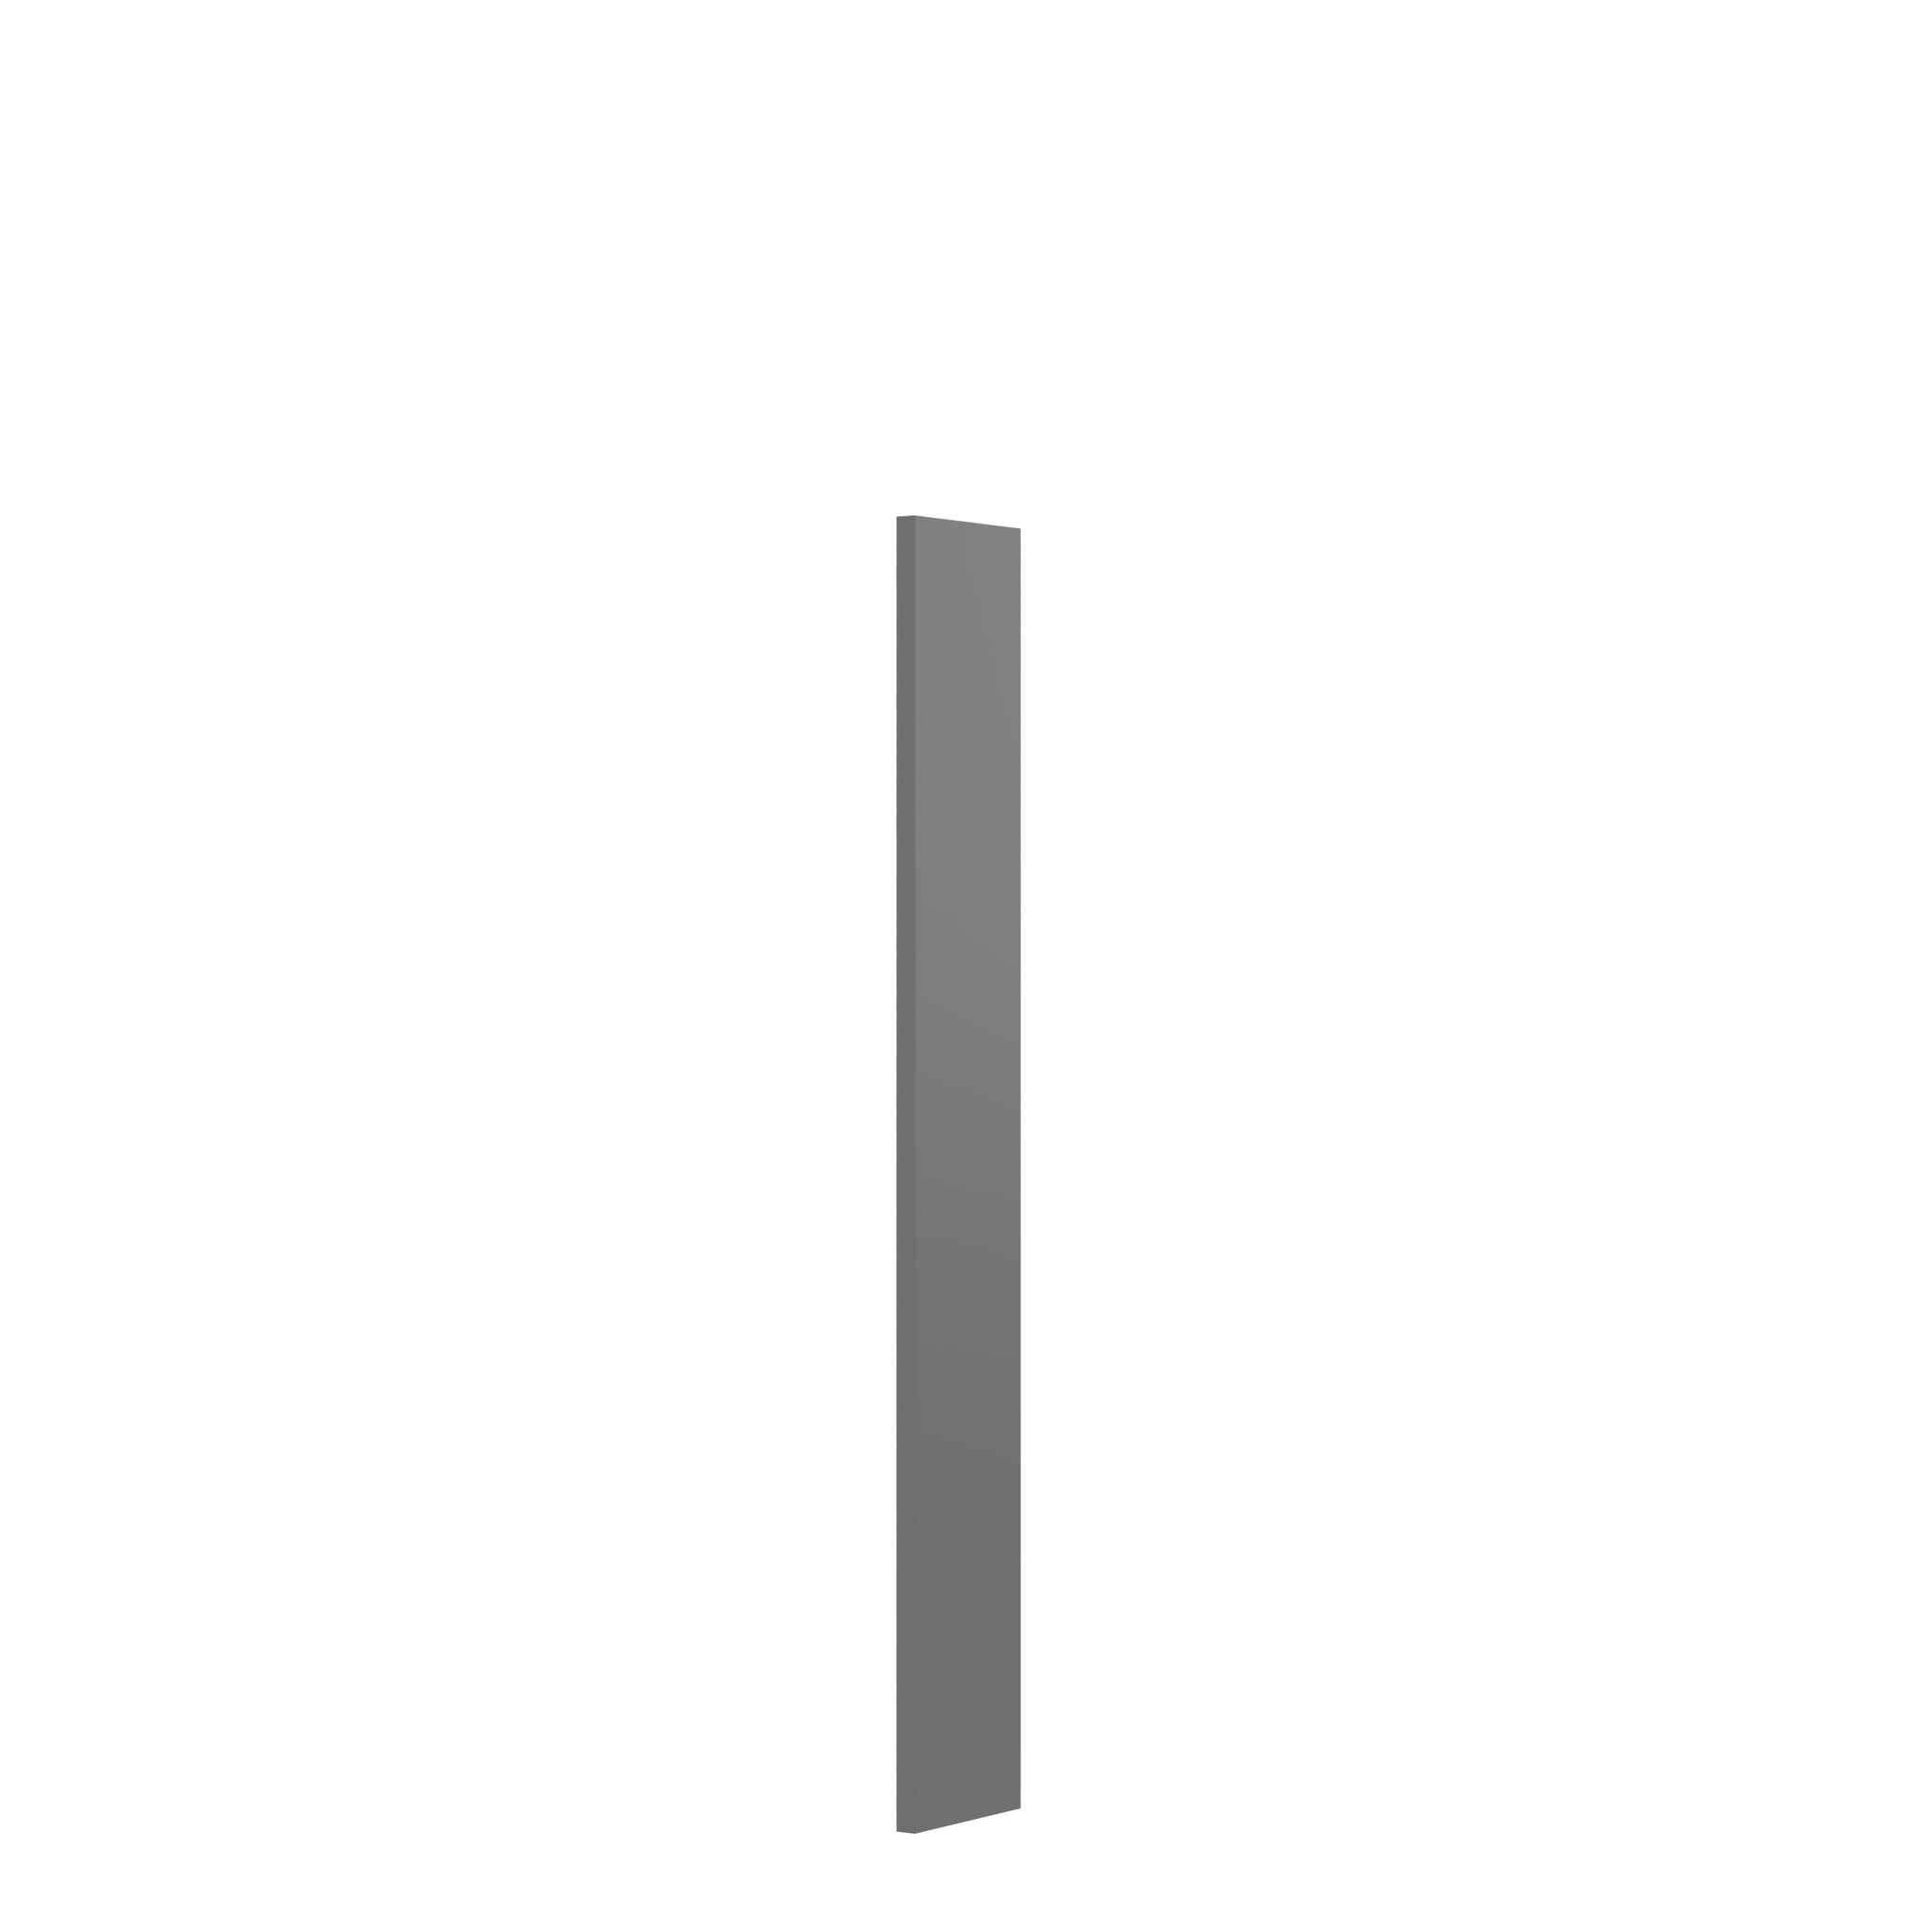 RTA - Elegant Dove - Wall Filler | 3"W x 30"H x 0.75"D